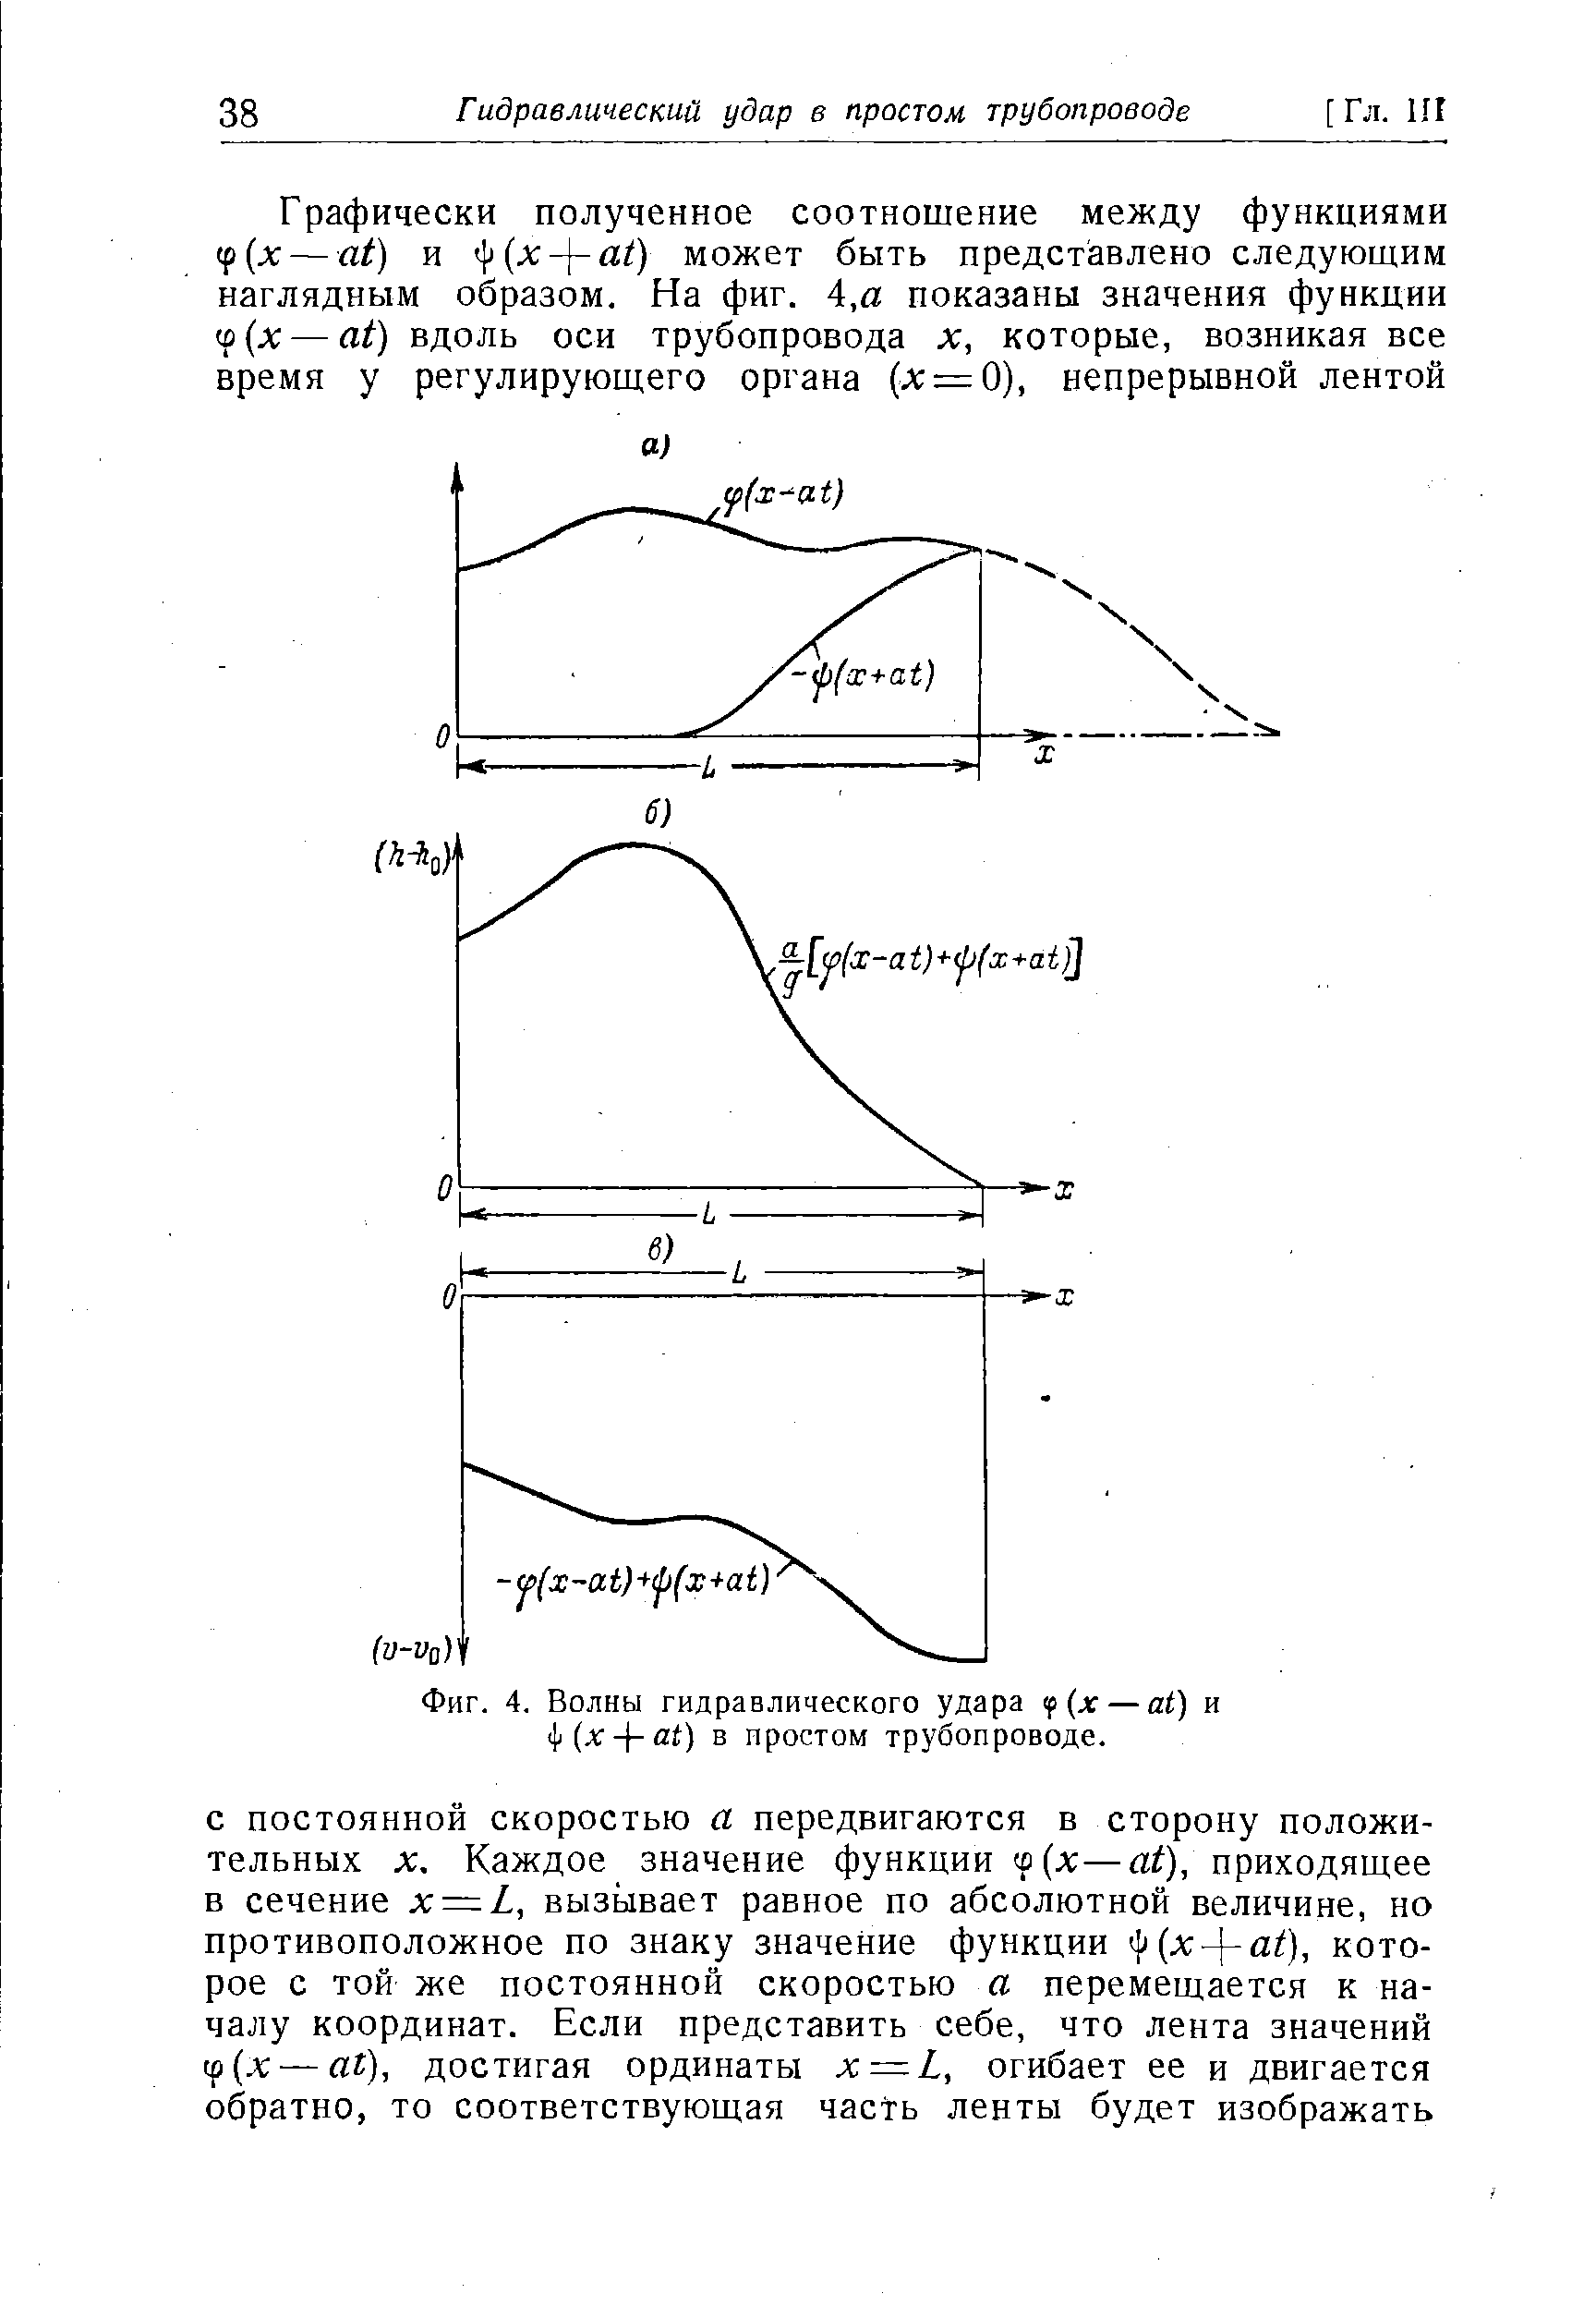 Фиг. 4. Волны гидравлического удара if(x — at) и ill (хat) в простом трубопроводе.
